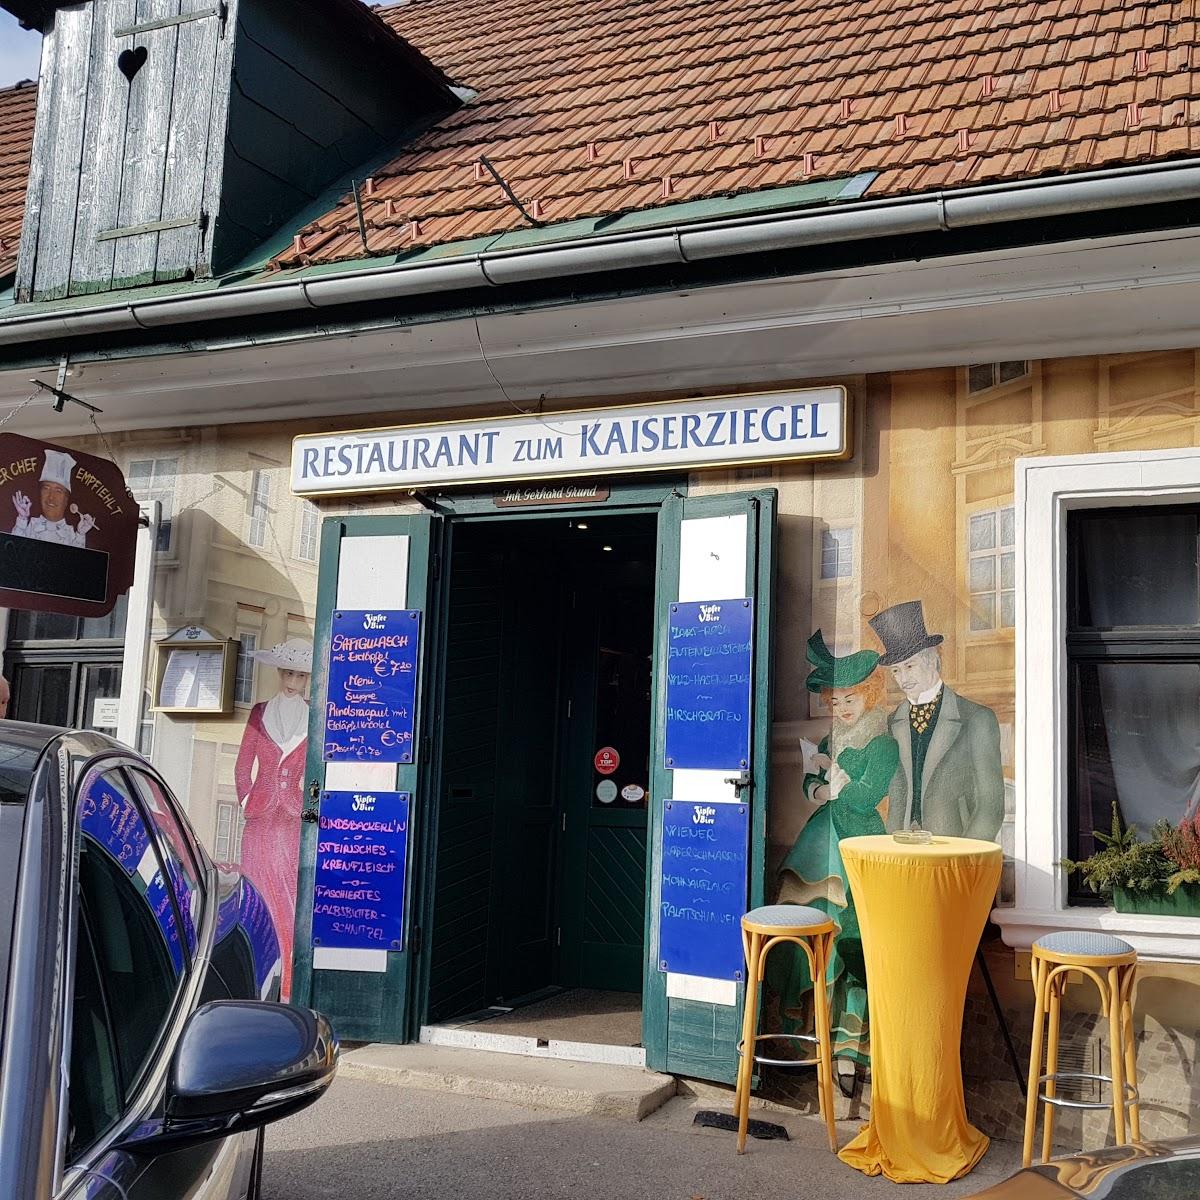 Restaurant "Restaurant Kaiserziegel" in Kaltenleutgeben